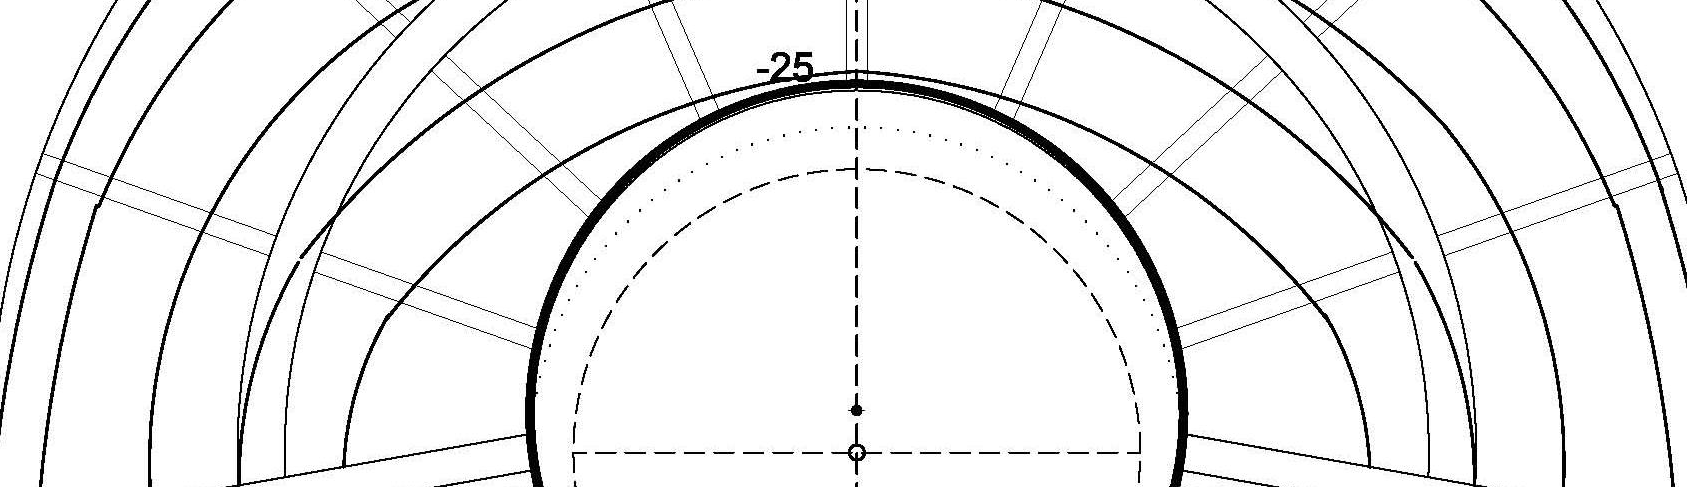 Η αύξηση του συνολικού ήχου (συγκριτικά µε την απουσία σκηνής) είναι εντυπωσιακή στην κεντρική περιοχή του κοίλου (+2,5 ως +3dB), αλλά περιορισµένη